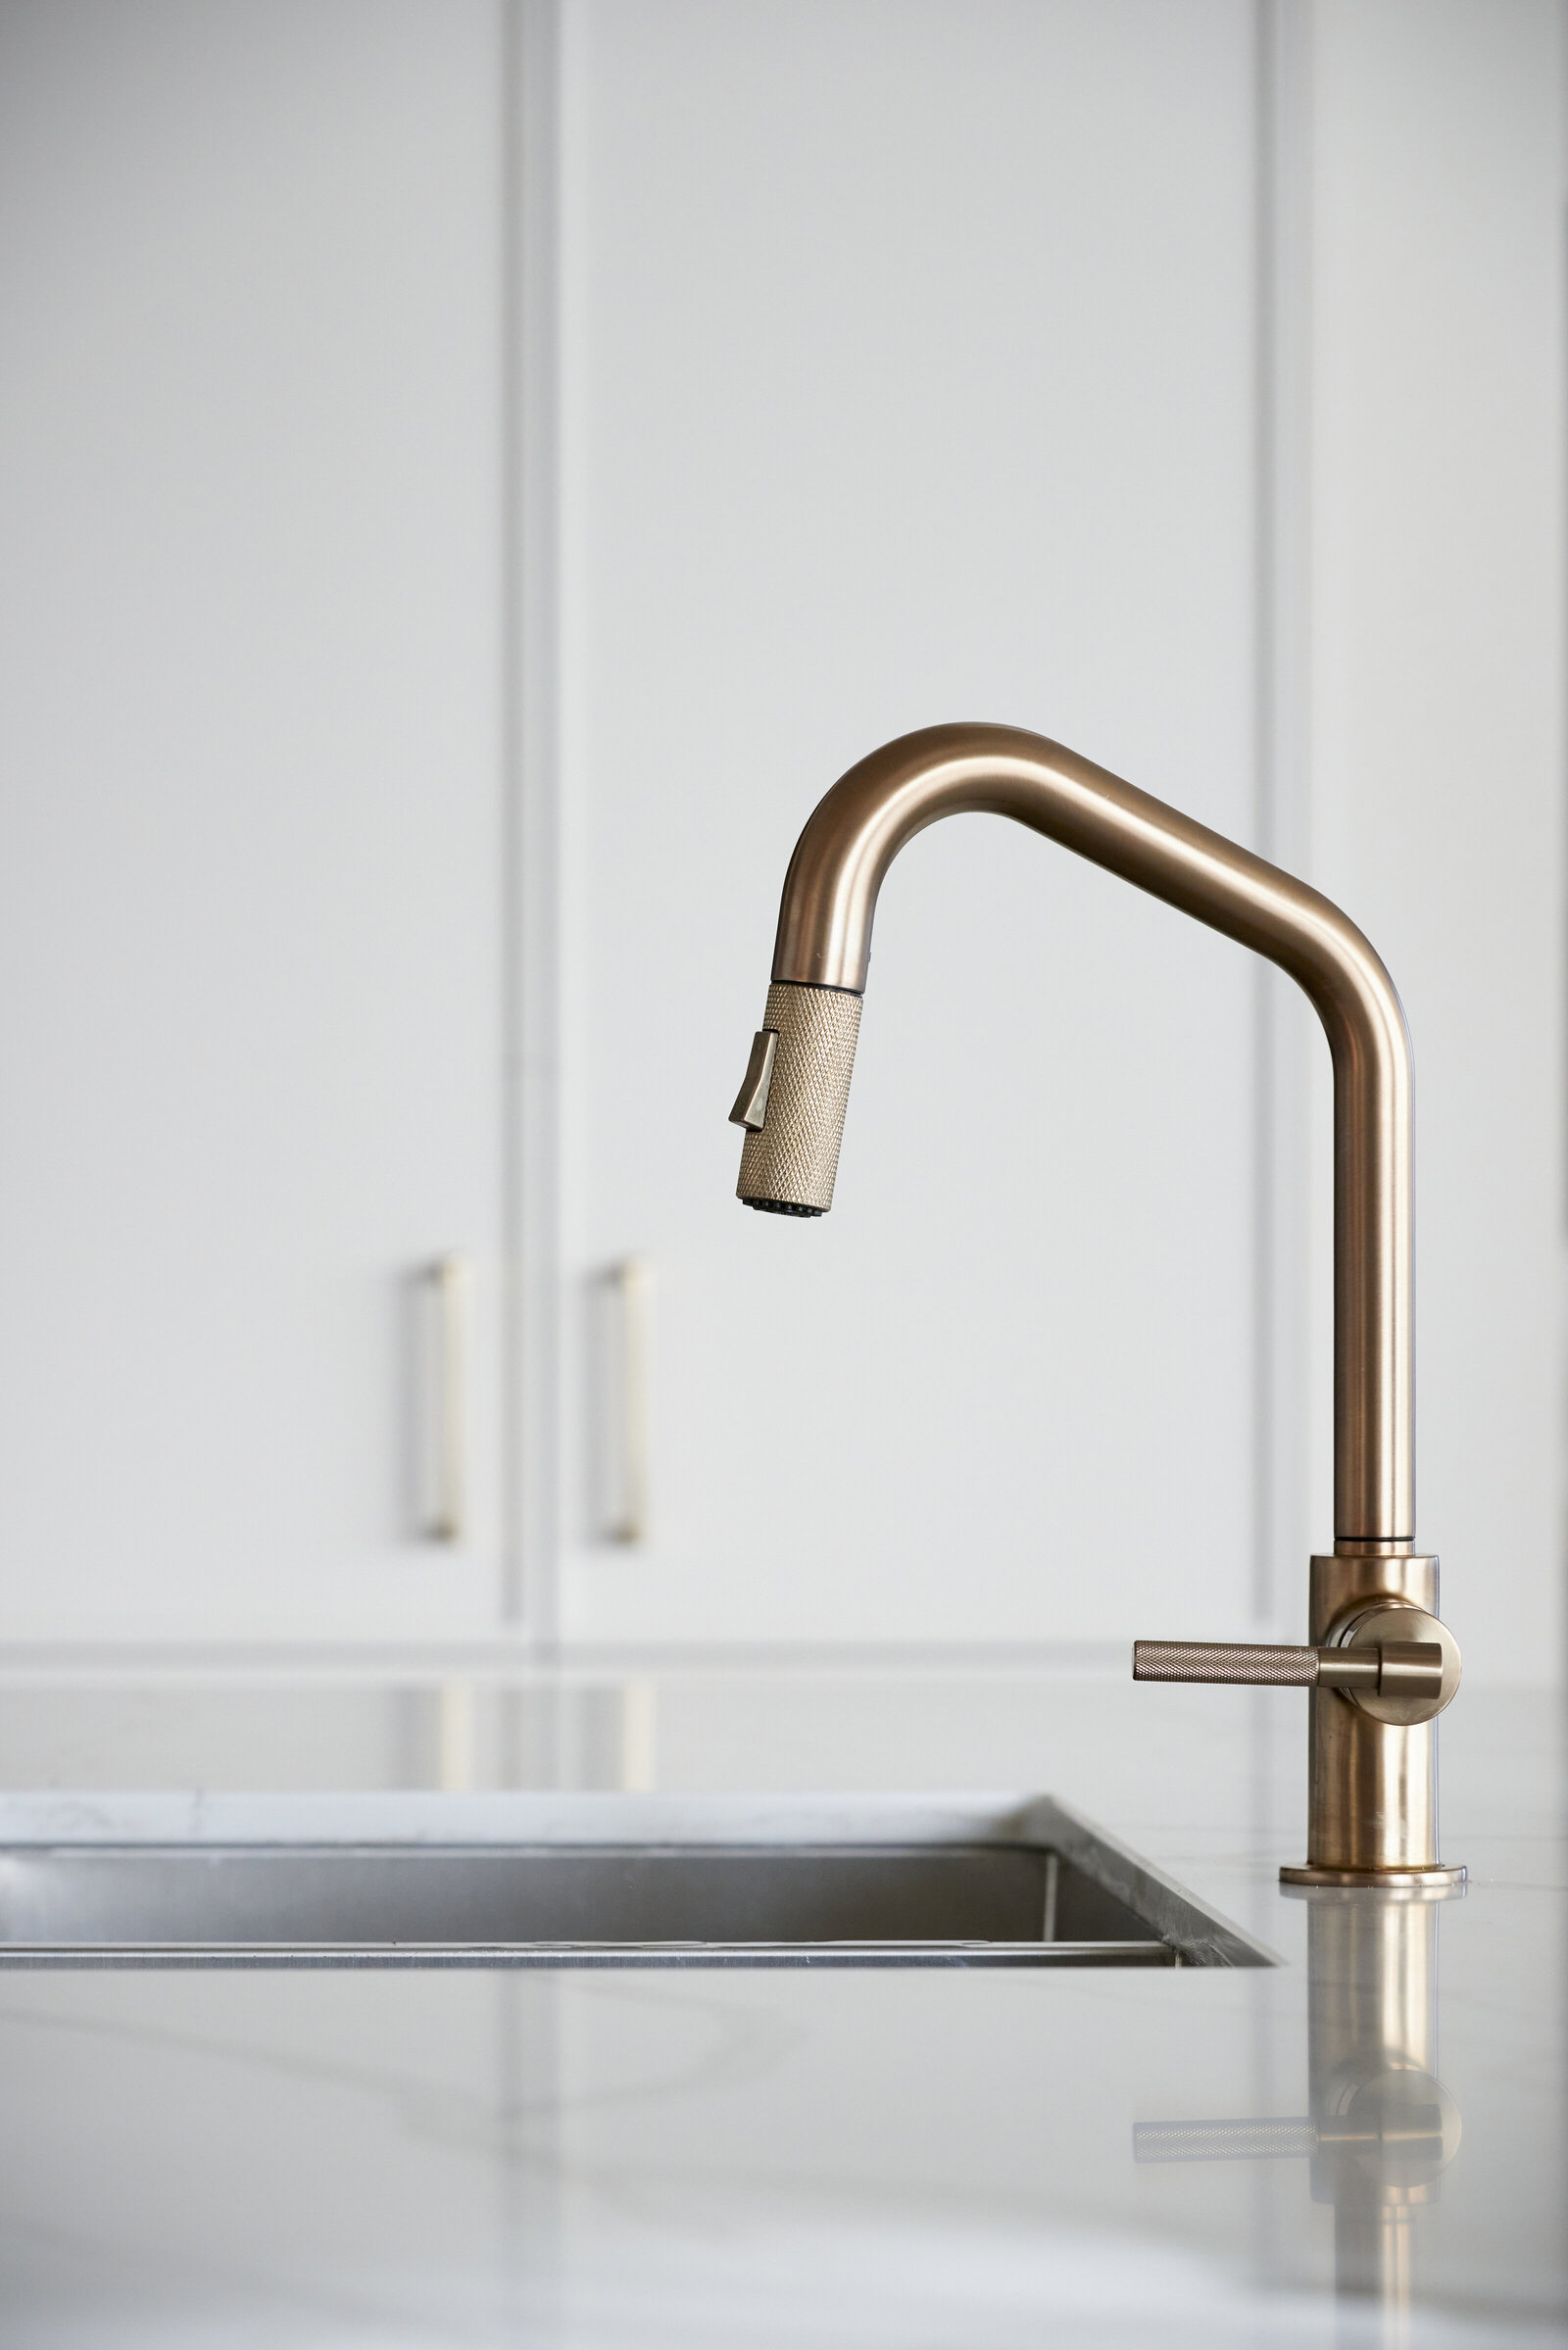 007-Berkeley Penthouse-Interiors-Kitchen Sink-Brass Faucet